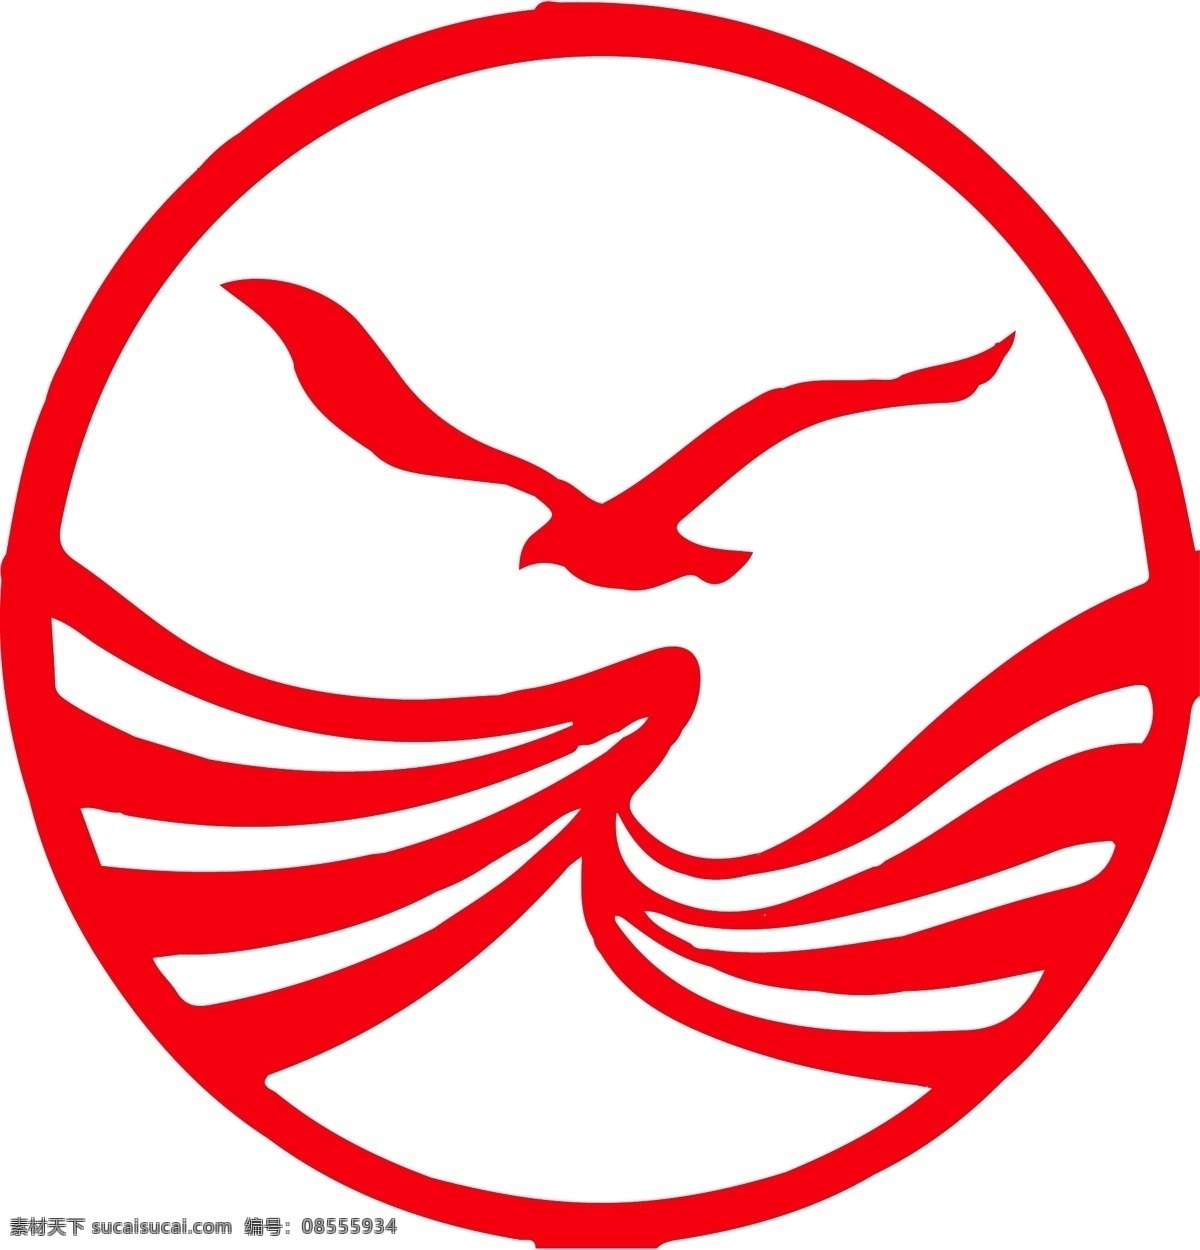 四川 航空 标志 logo 四川航空 四川航空标志 川航 四川航空标 品牌